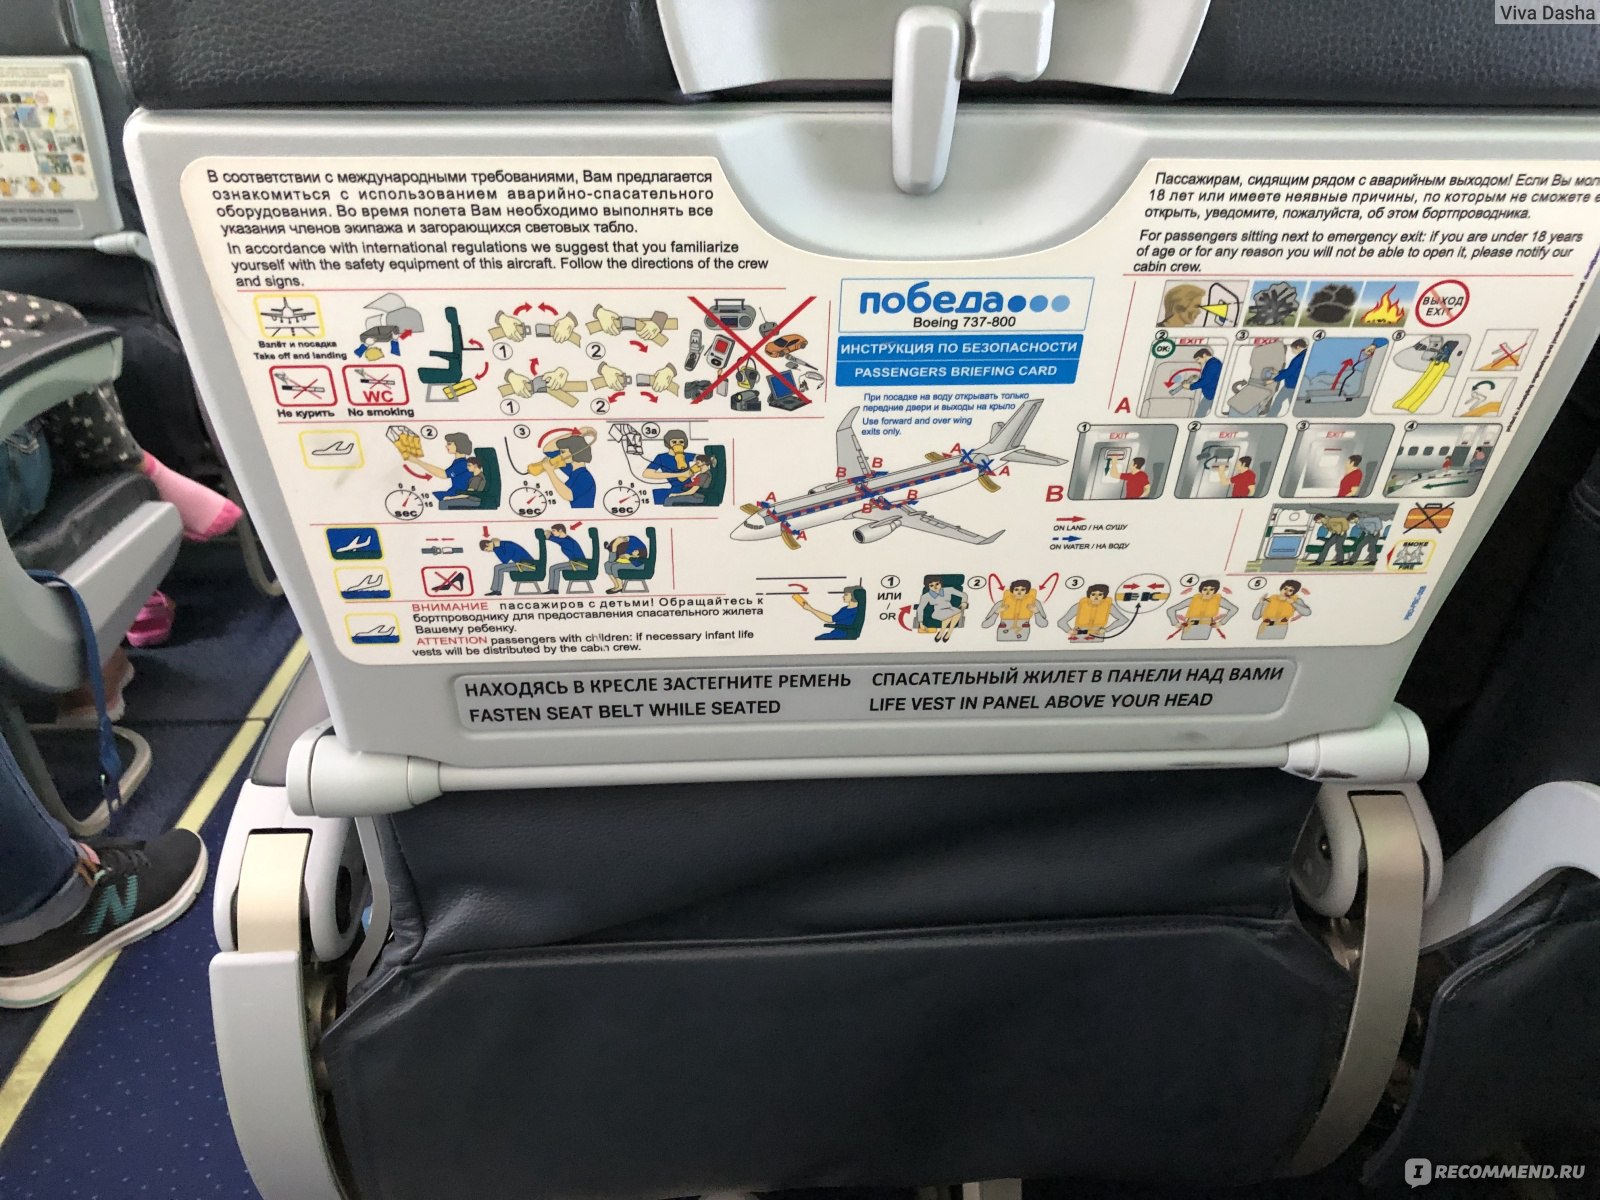 Безопасное расположение в салоне самолета это кресло расположенное